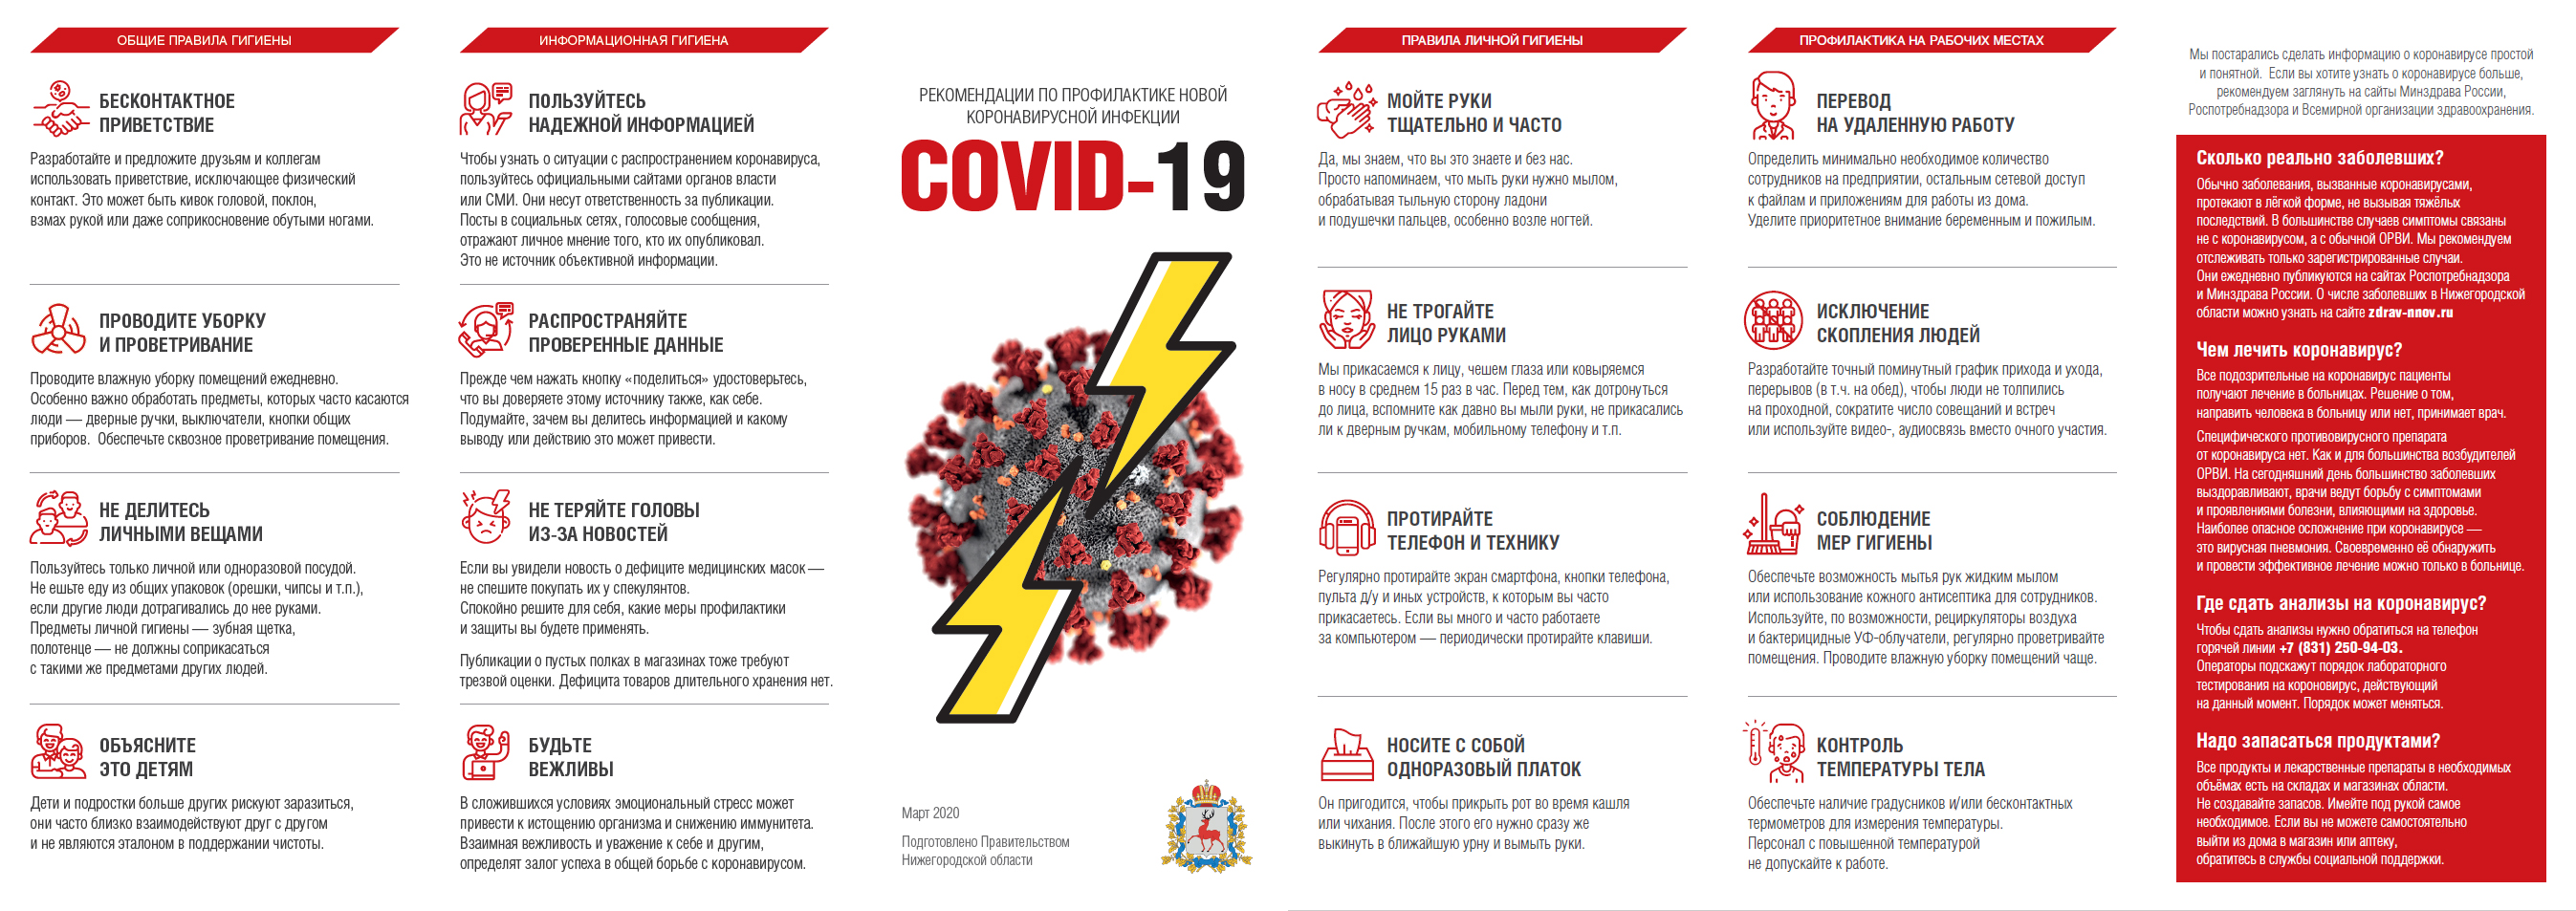 Памятка по профилактике коронавируса на предприятии